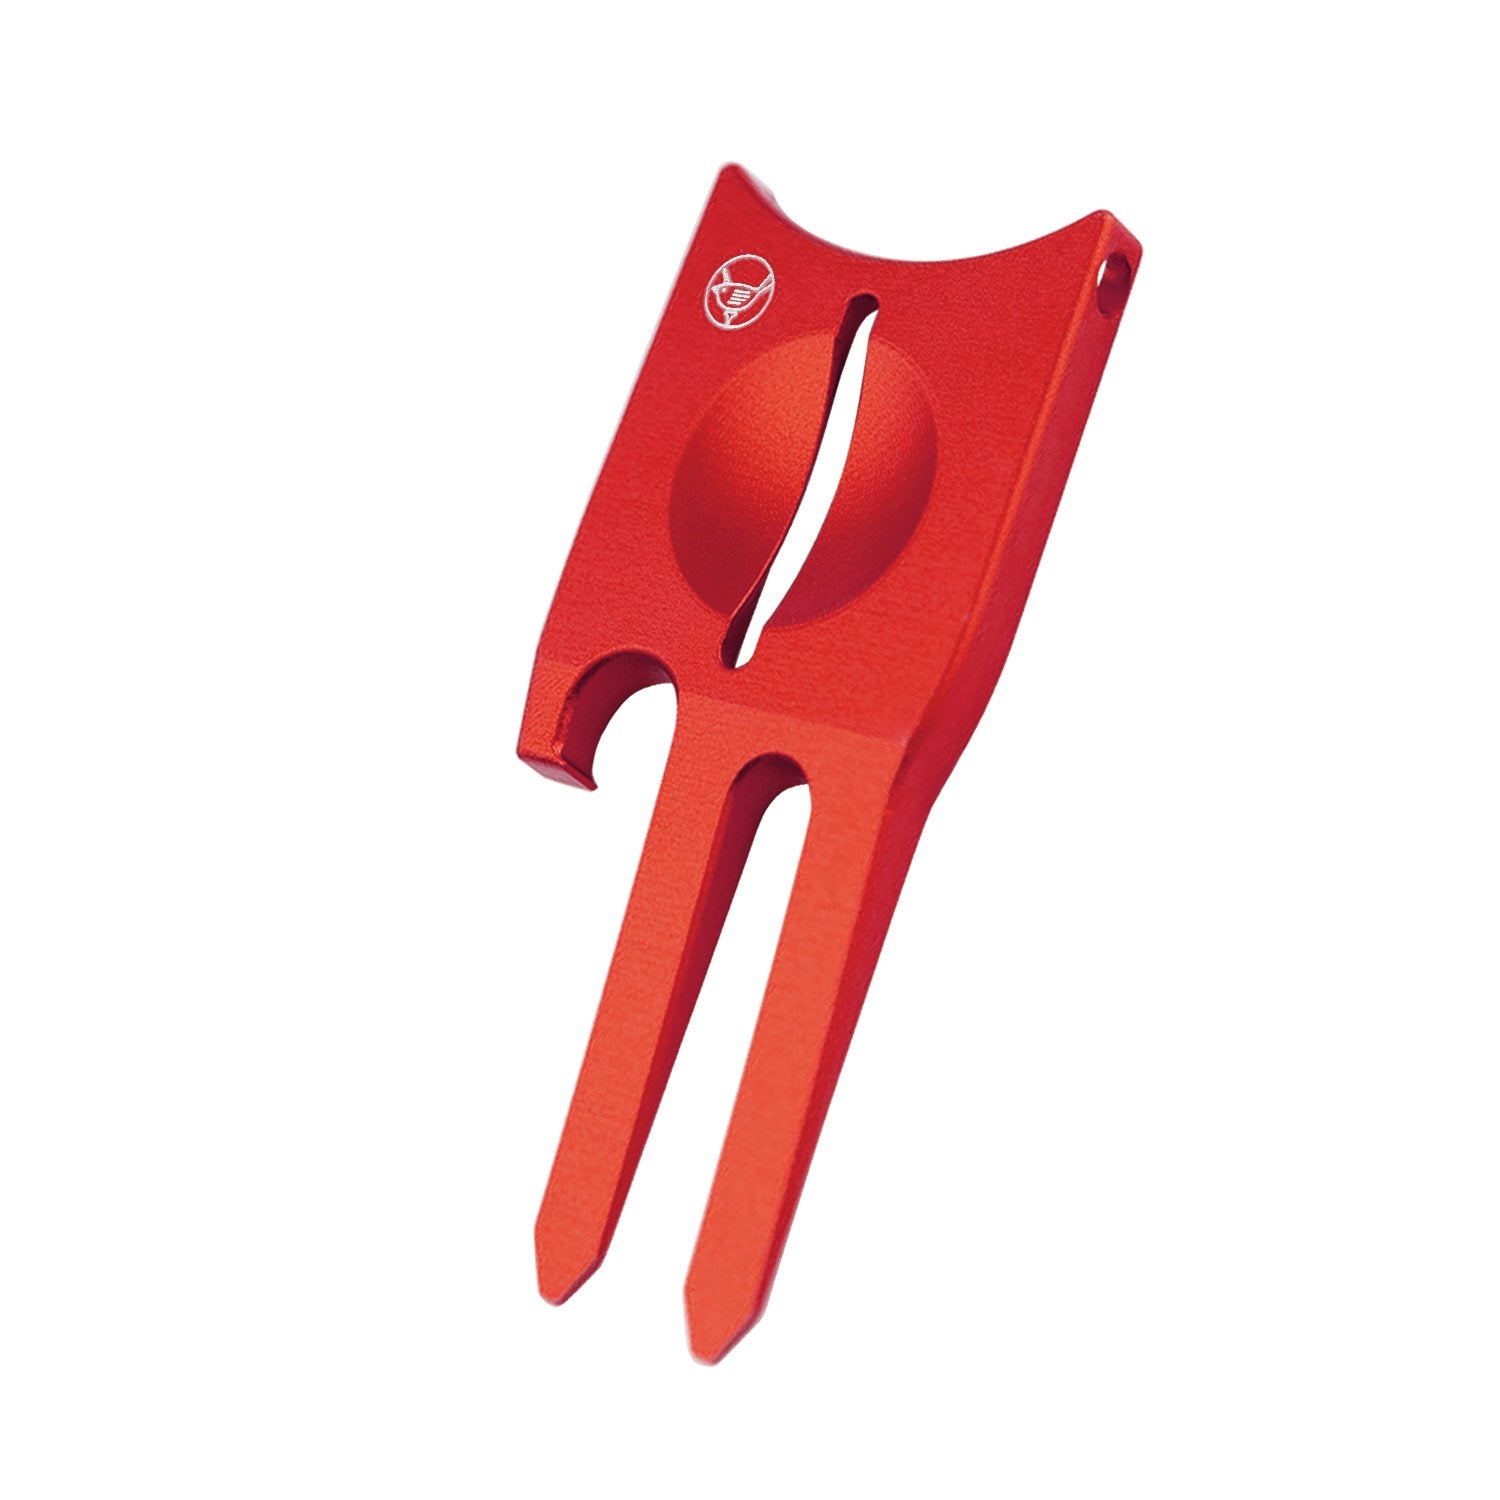 red repair tool for golf